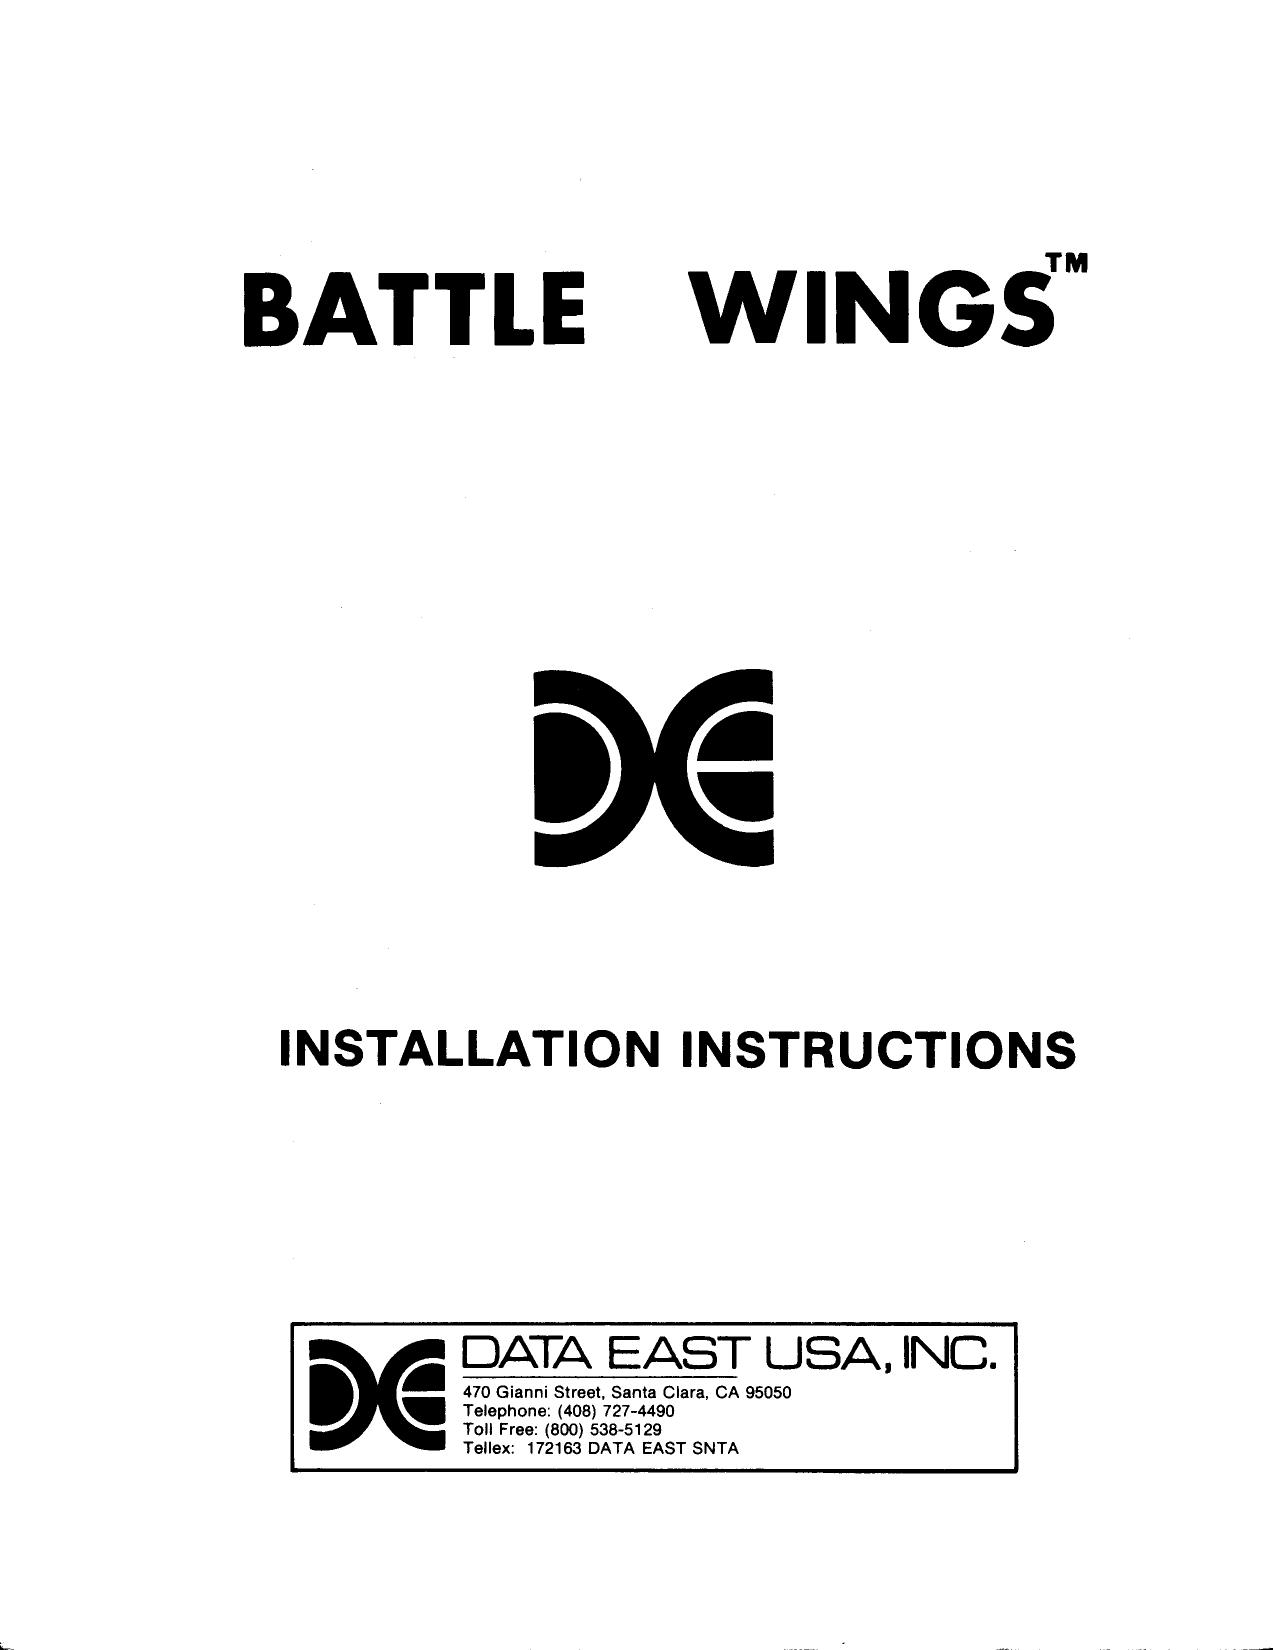 Battle Wings